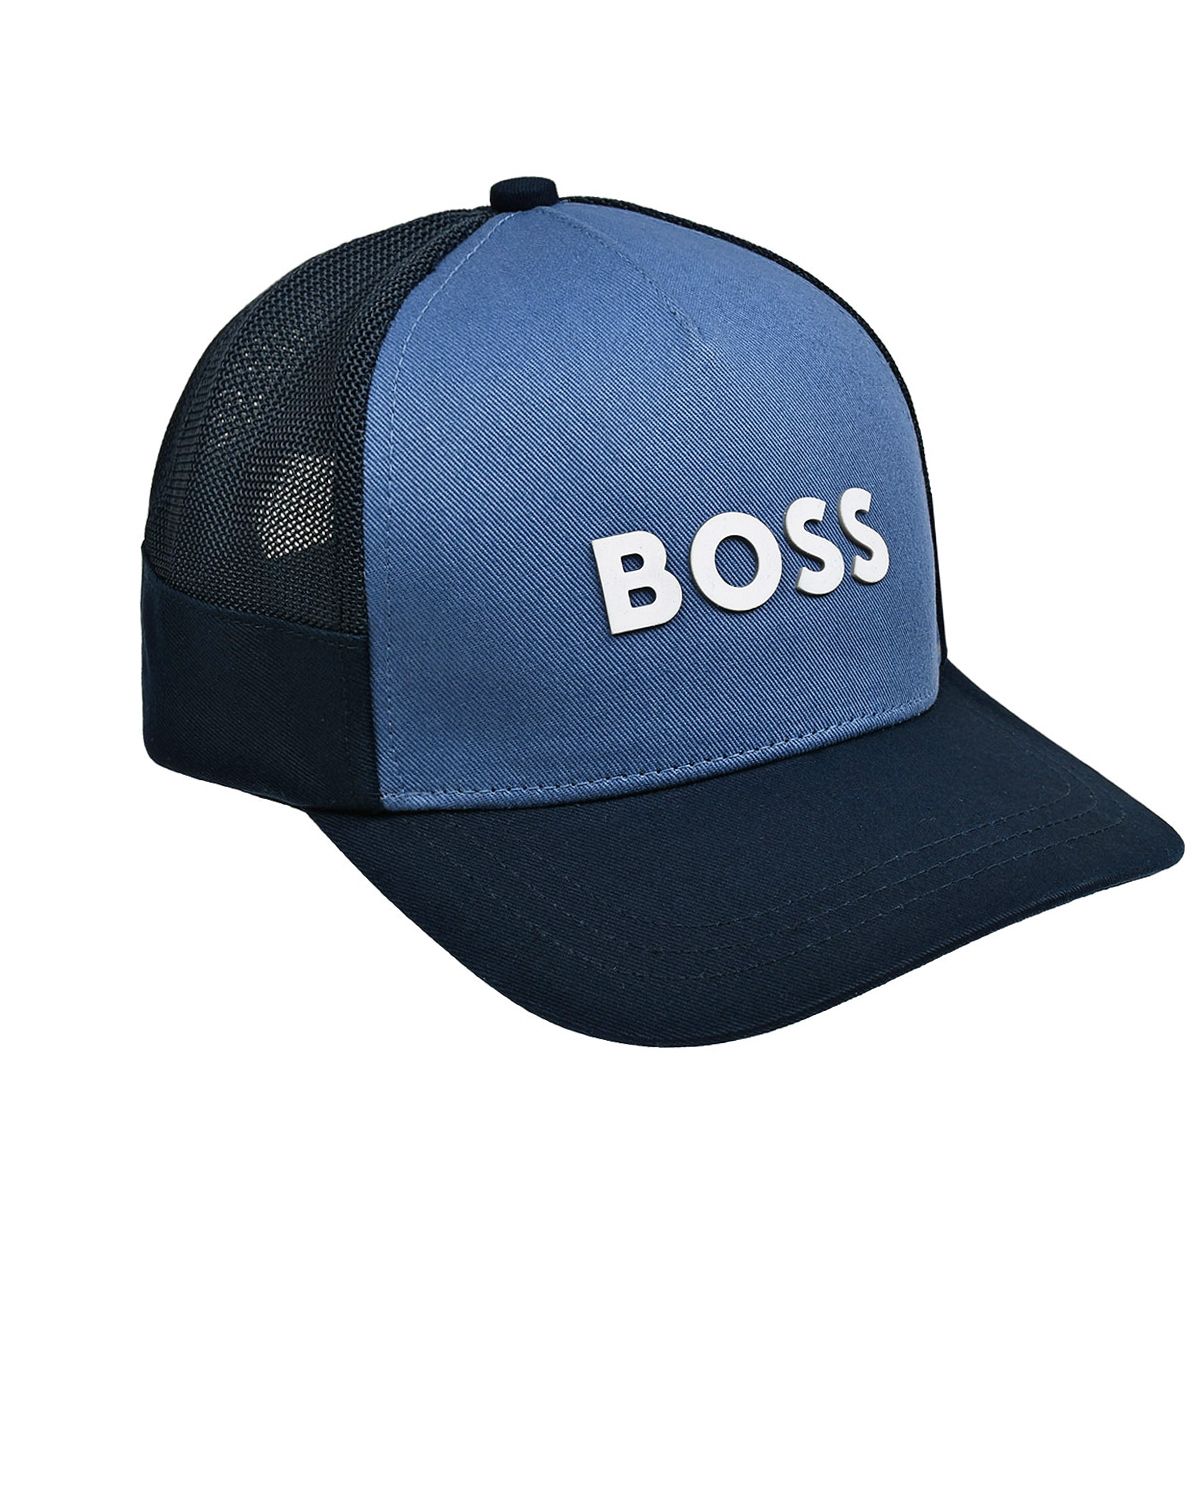 Бейсболка с белым логотипом, синяя BOSS, размер 56, цвет нет цвета - фото 1